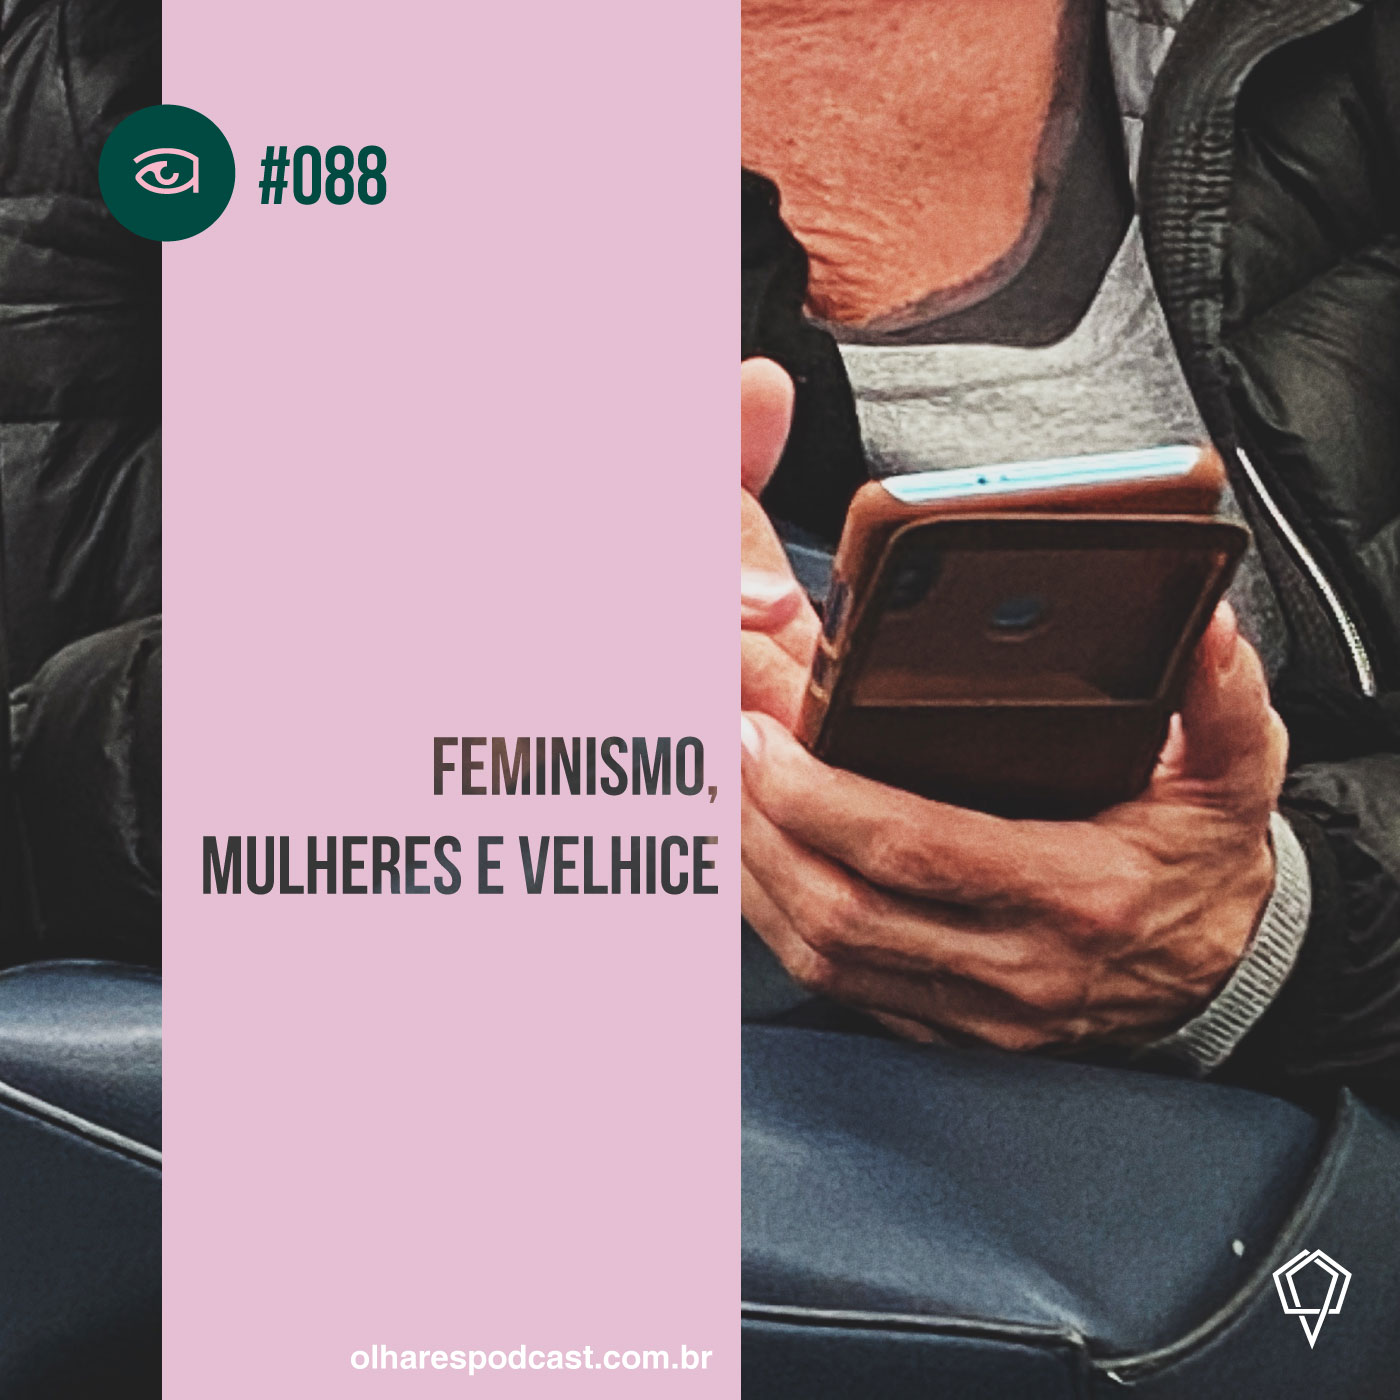 Olhares #088 Feminismo, mulheres e velhice